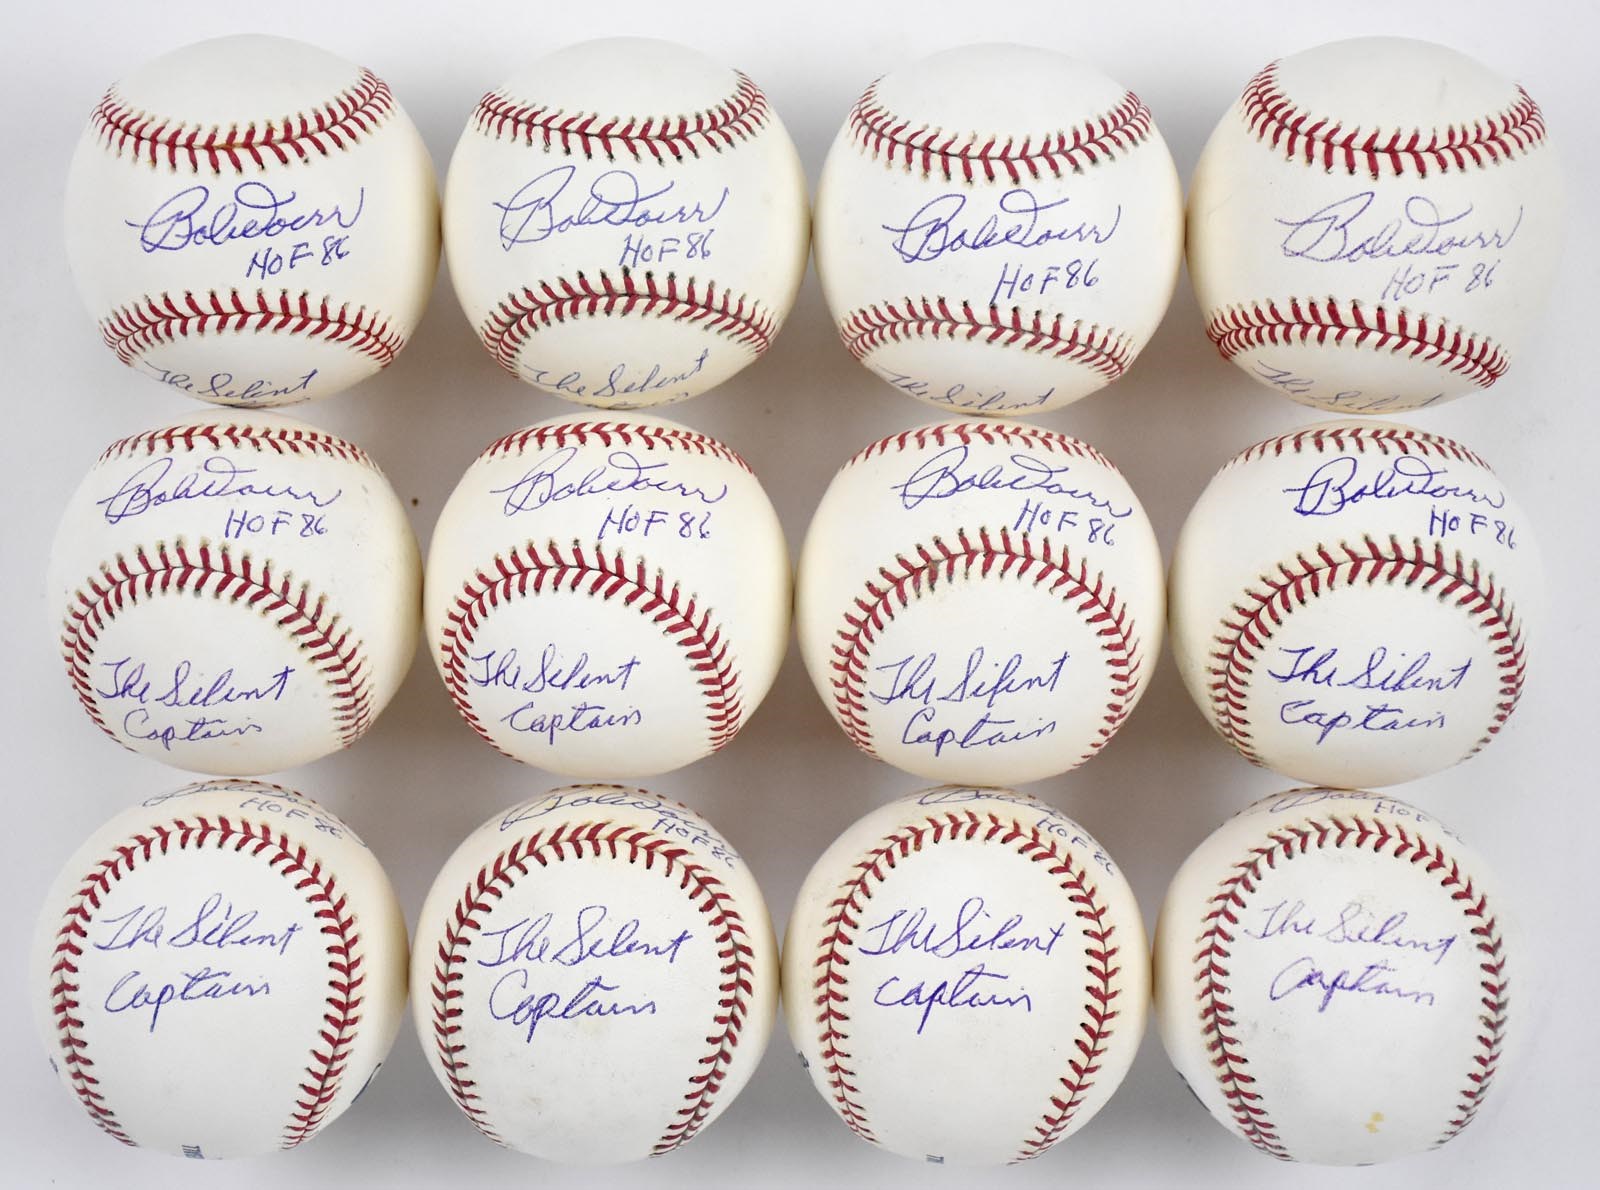 - One Dozen Bobby Doerr "The Silent Captain" Single Signed Baseballs (12)